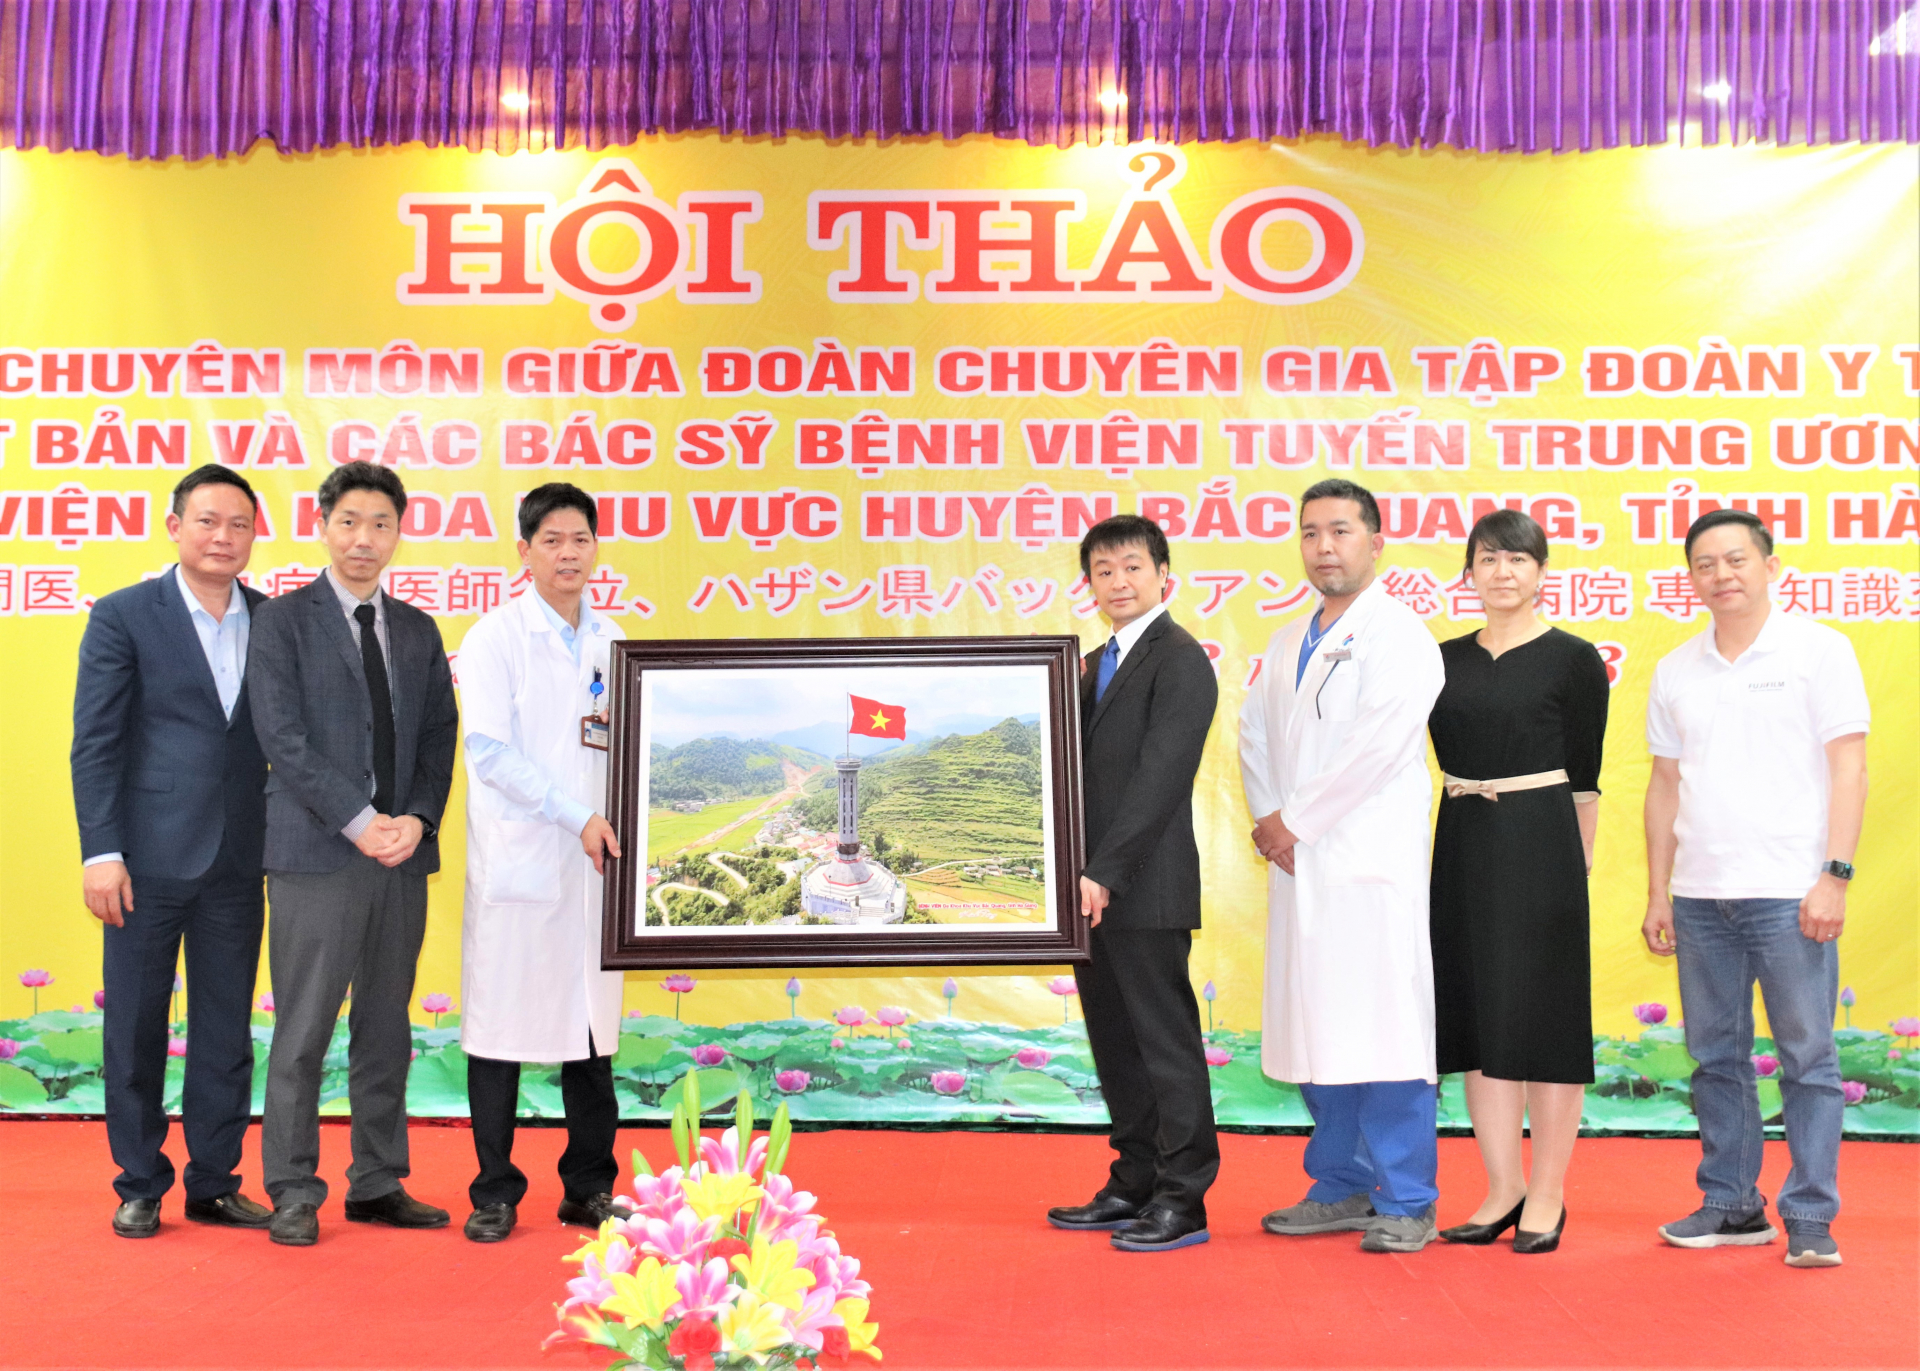 Lãnh đạo Bệnh viện ĐKKV huyện Bắc Quang tặng bức tranh Cột cờ Lũng Cú (Hà Giang) cho đoàn chuyên gia của Tập đoàn Y tế EMS Nhật Bản.